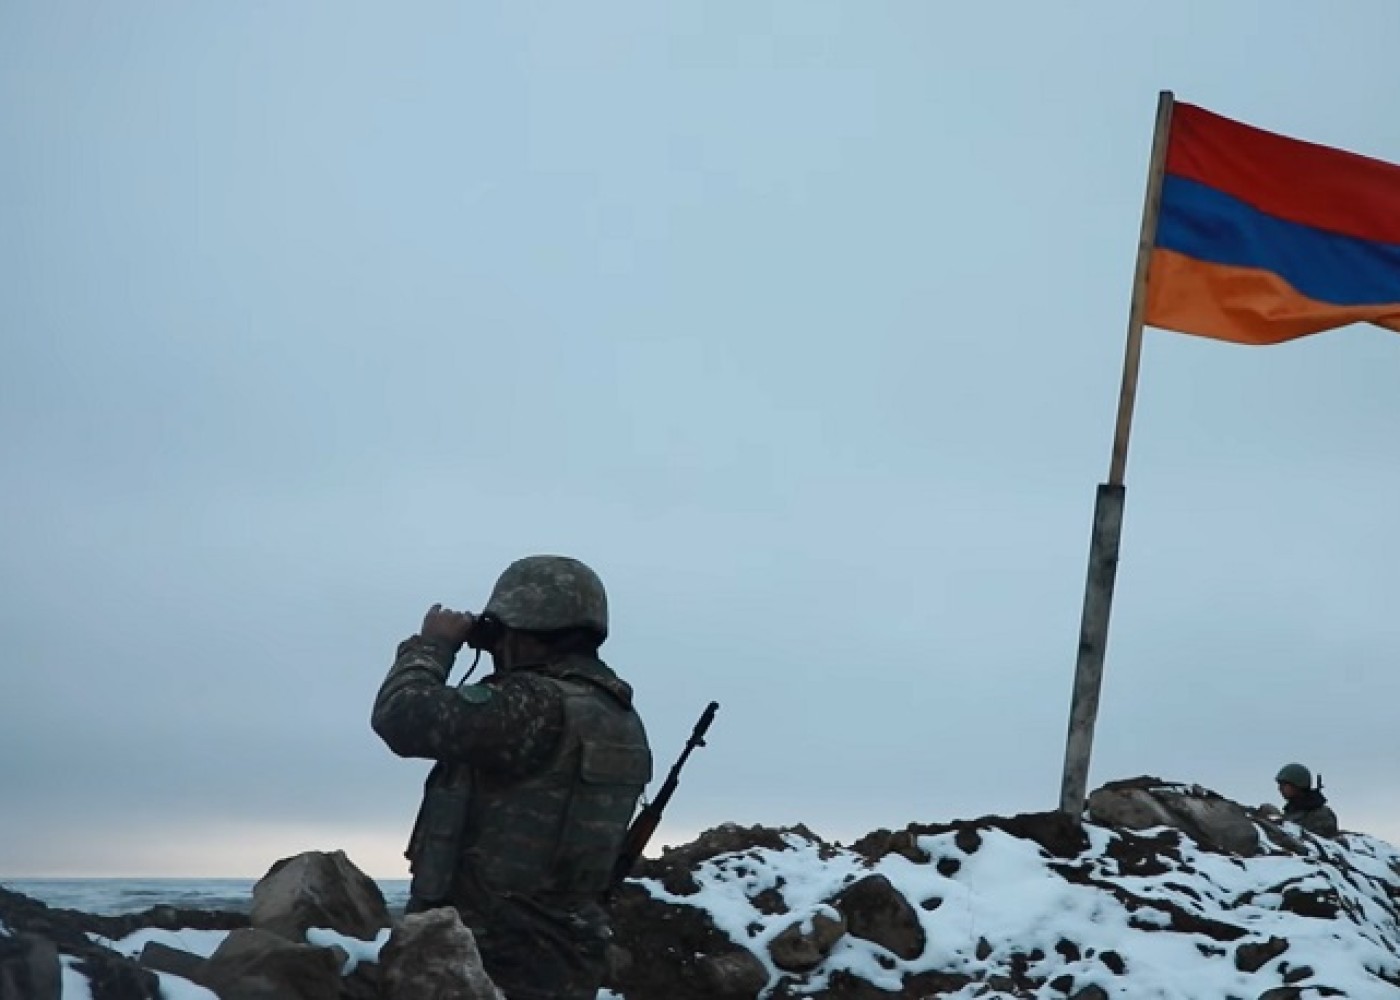 Ermənistan yenidən qoşunları sərhəddən çıxarmağı təklif etdi